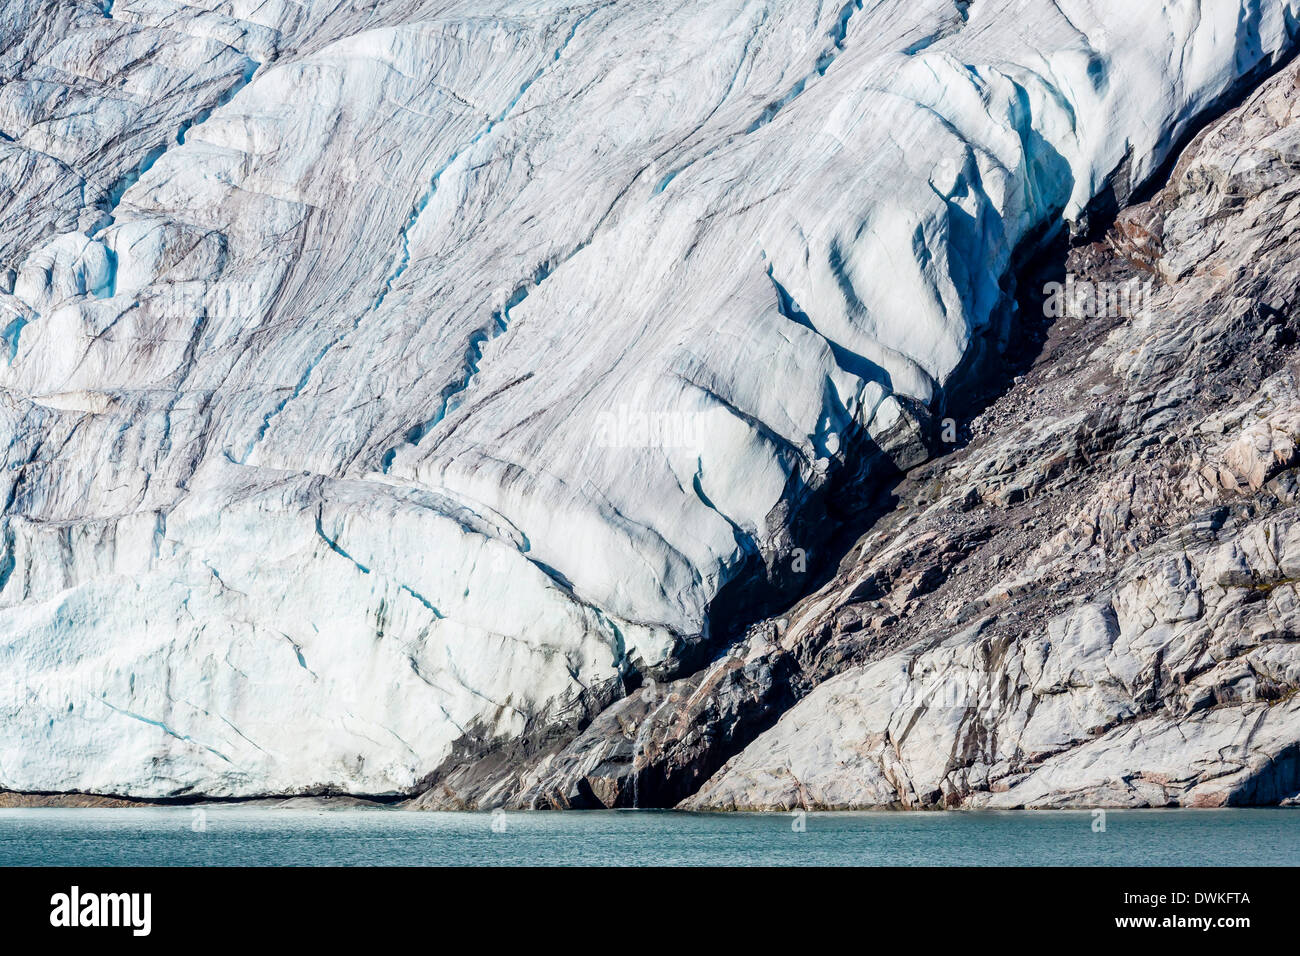 Dettaglio del ghiacciaio in braccio ghiacciato, Isola Baffin, Nunavut, Canada, America del Nord Foto Stock